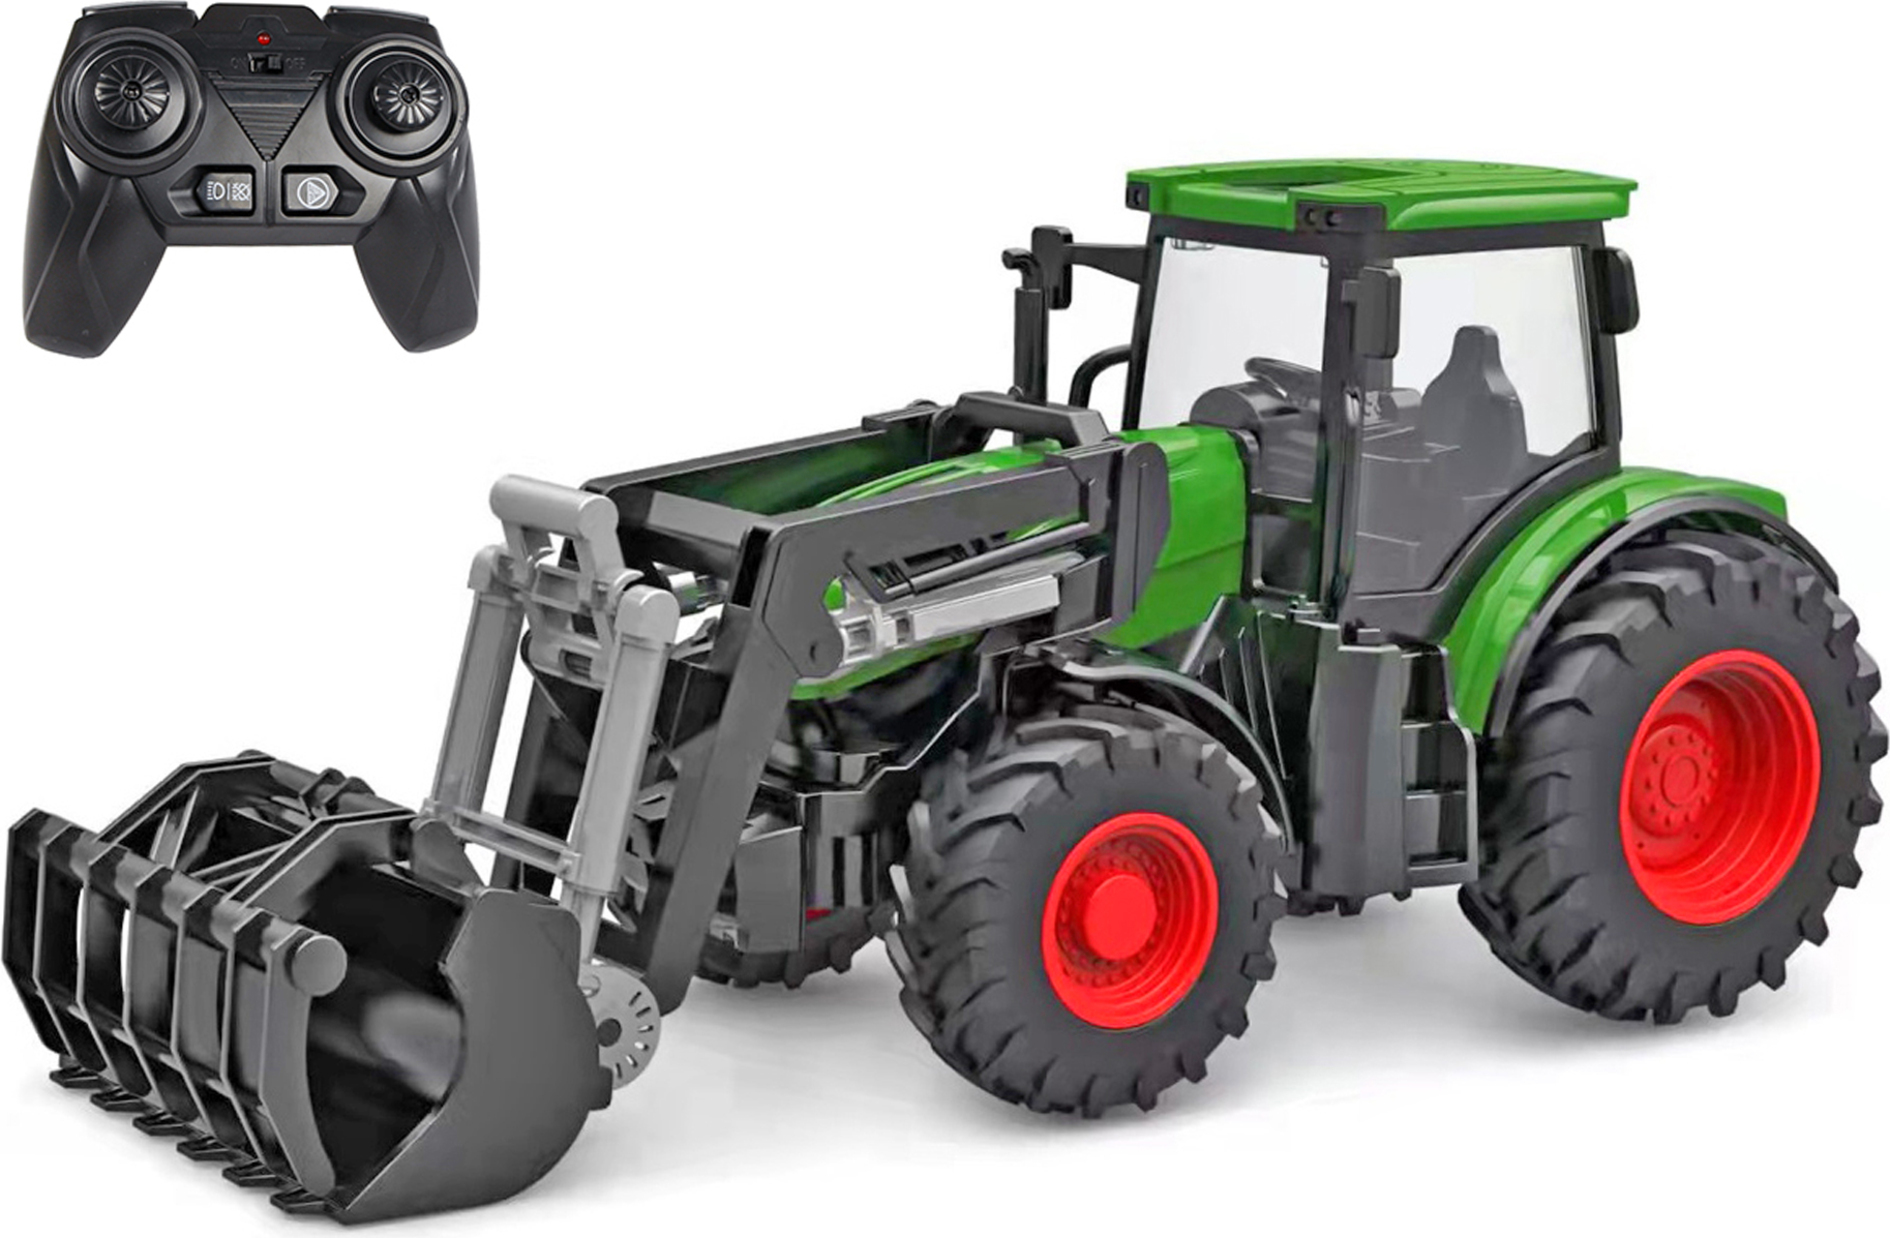 Kids Globe R/C traktor zelený 27cm s předním nakladačem na baterie se světlem 2,4GHz